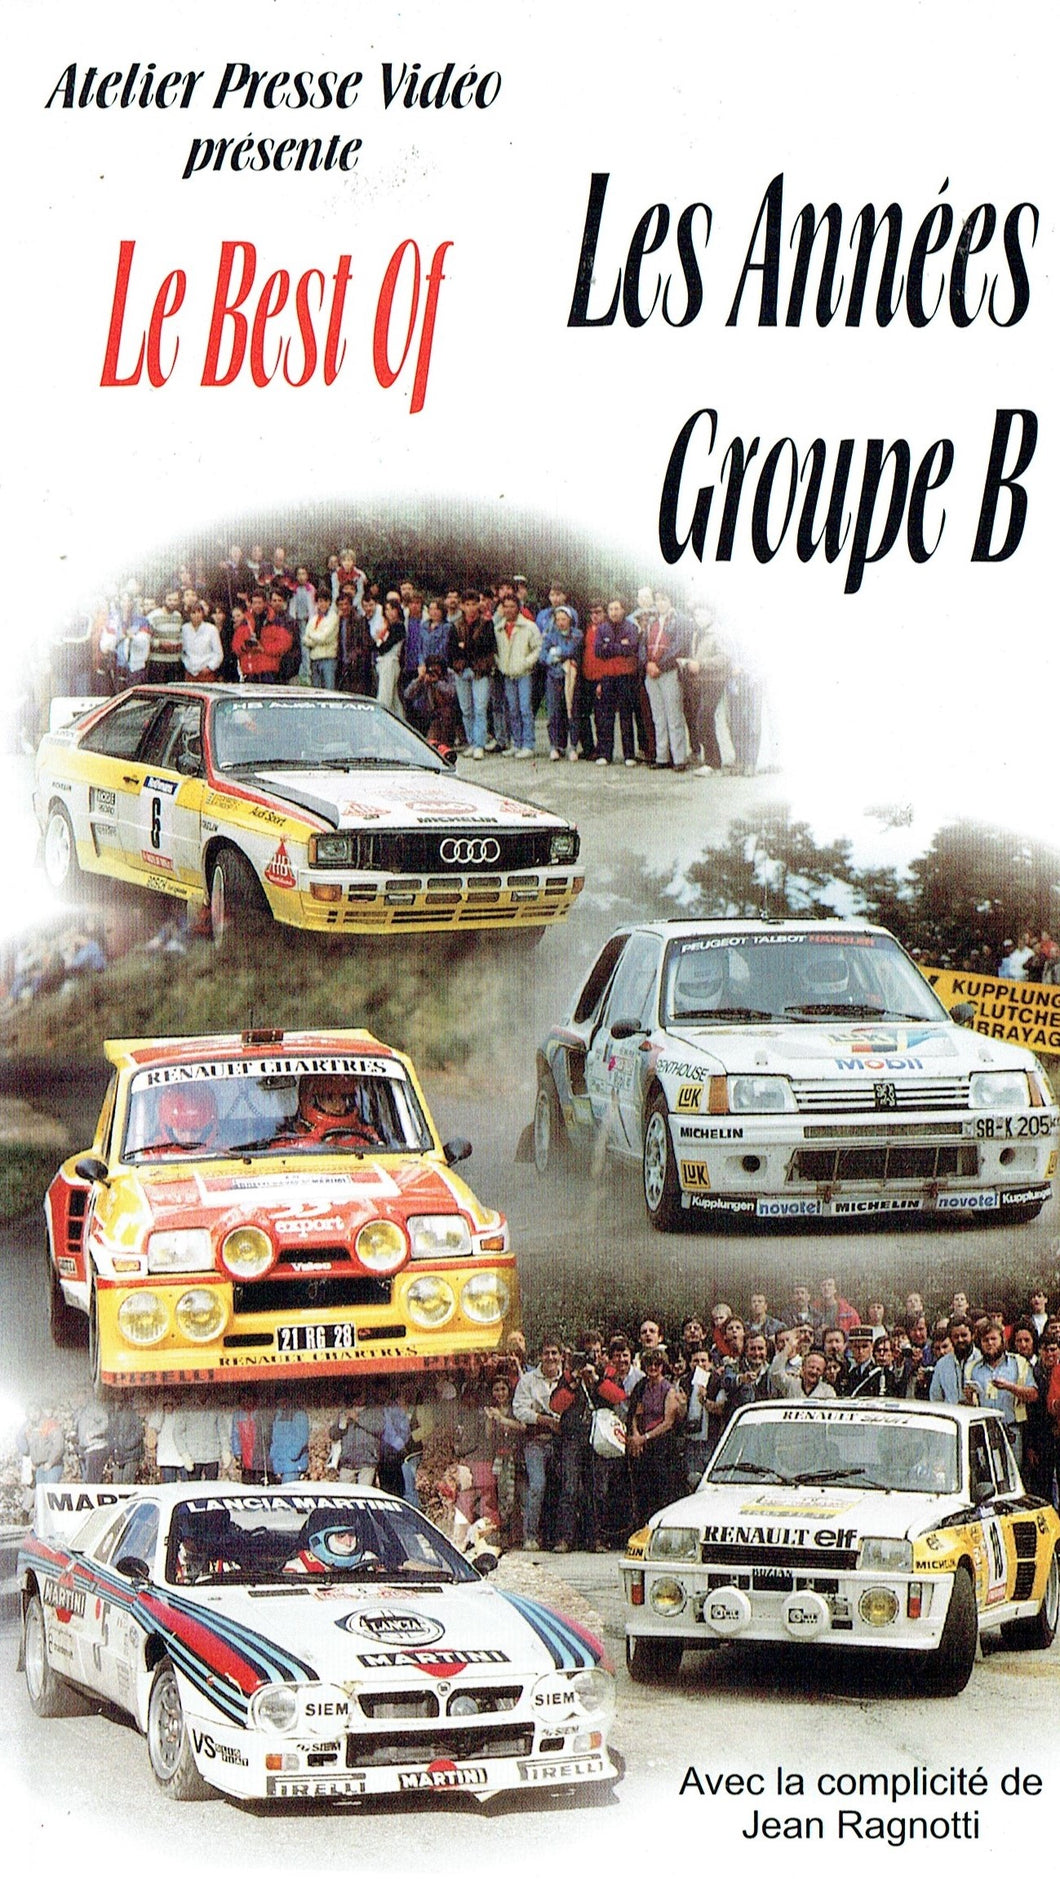 Le Best of Les Années Groupe B - Avec la Complicité de Jean Ragnotti - World Rally Championship [VHS]